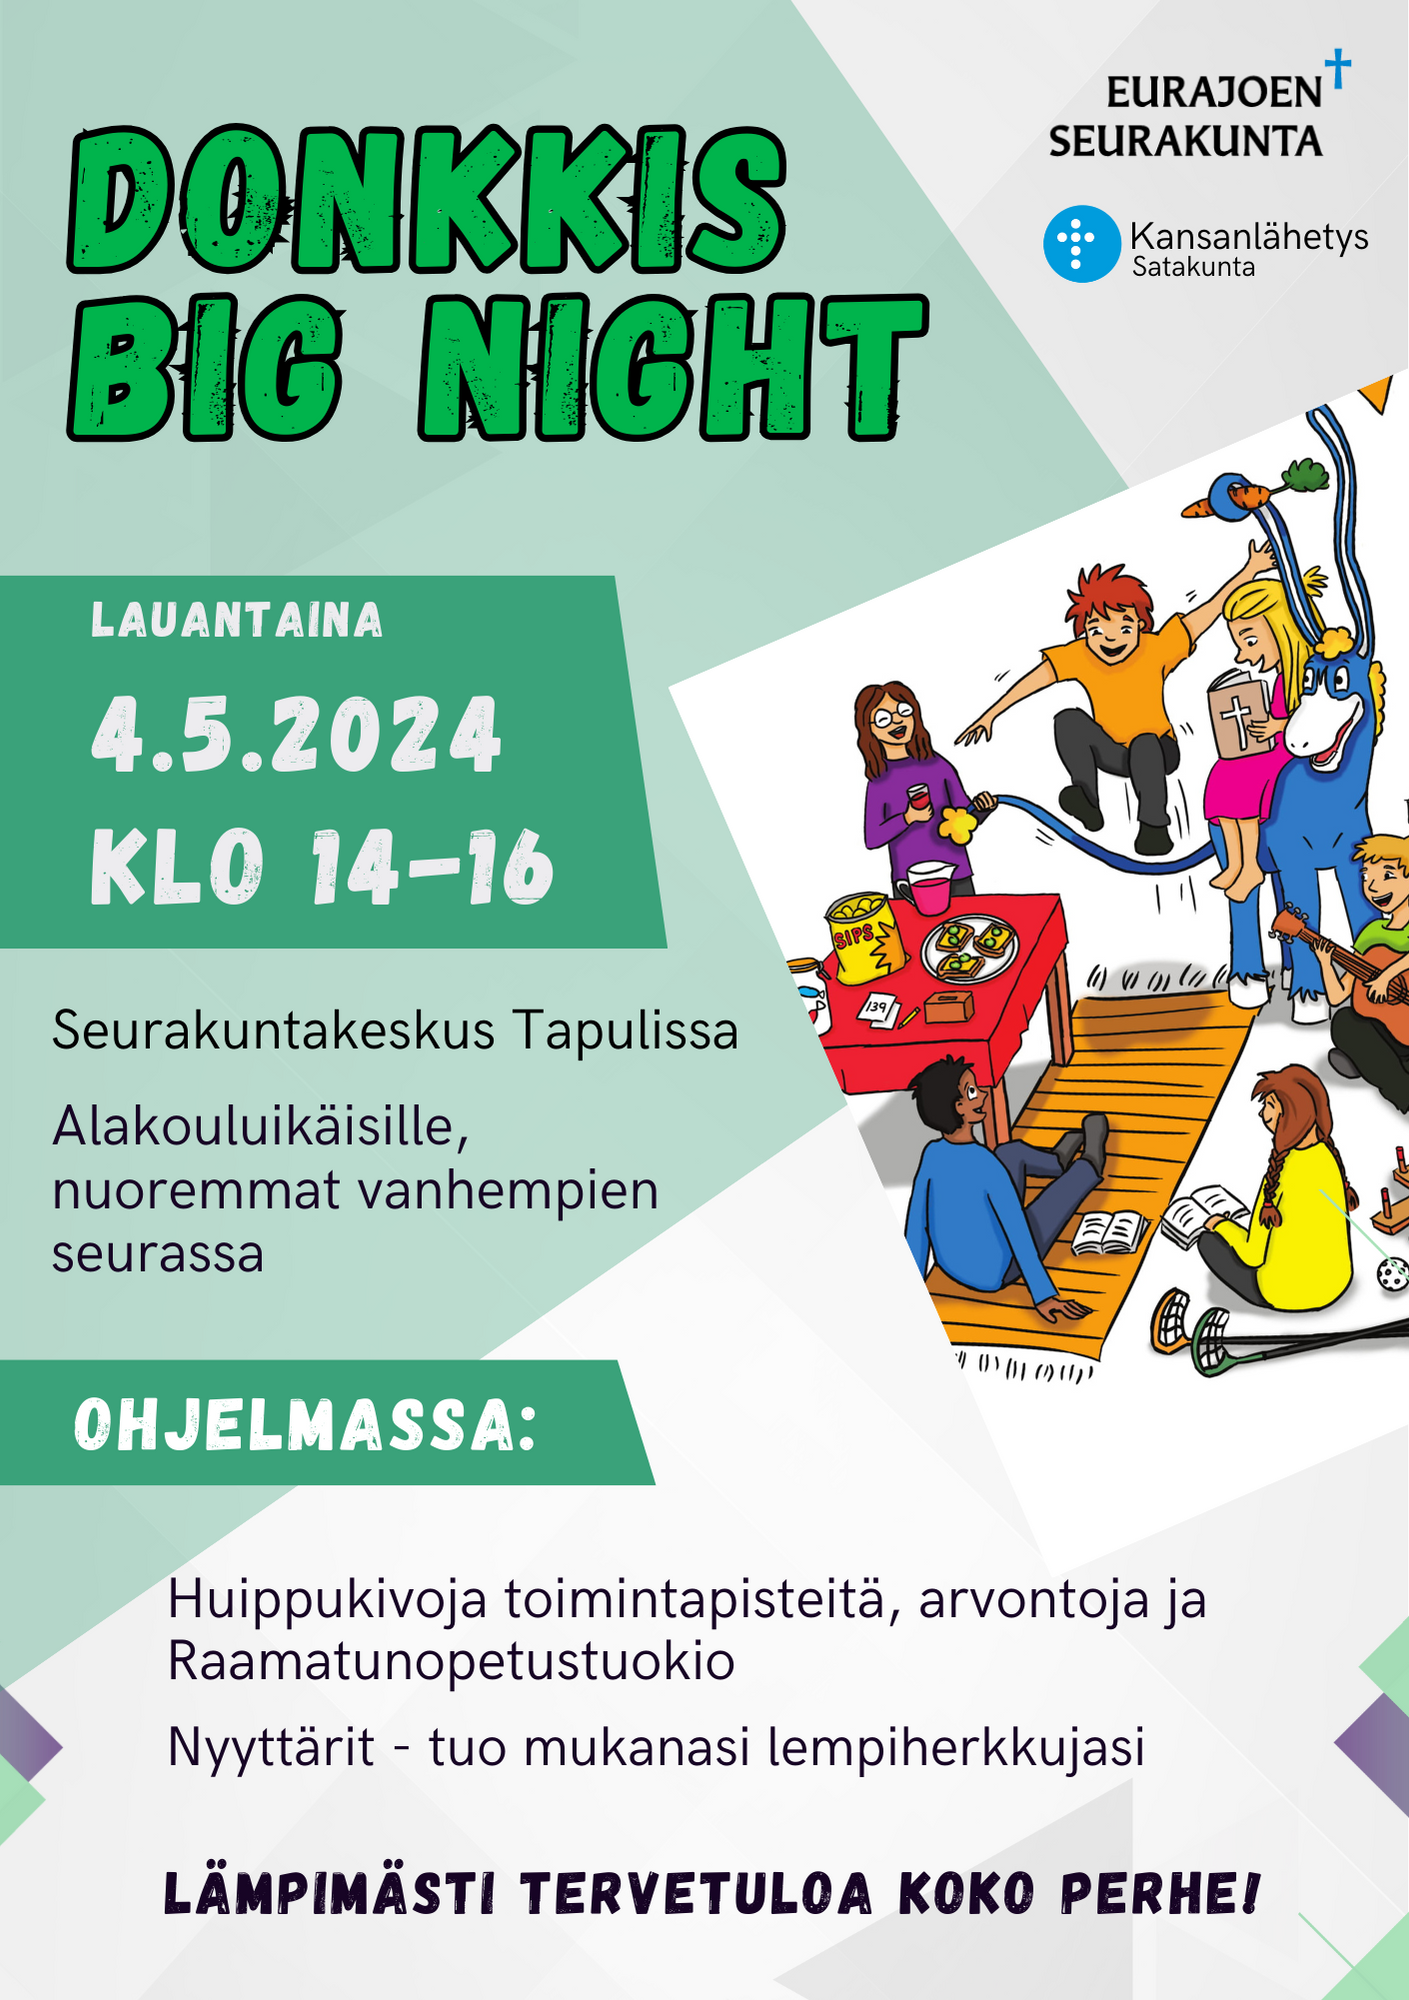 Donkkis big night
Lauantaina 4.5.2024 klo 14-16
Seurakuntakeskus Tapulissa
Alakouluikäisille